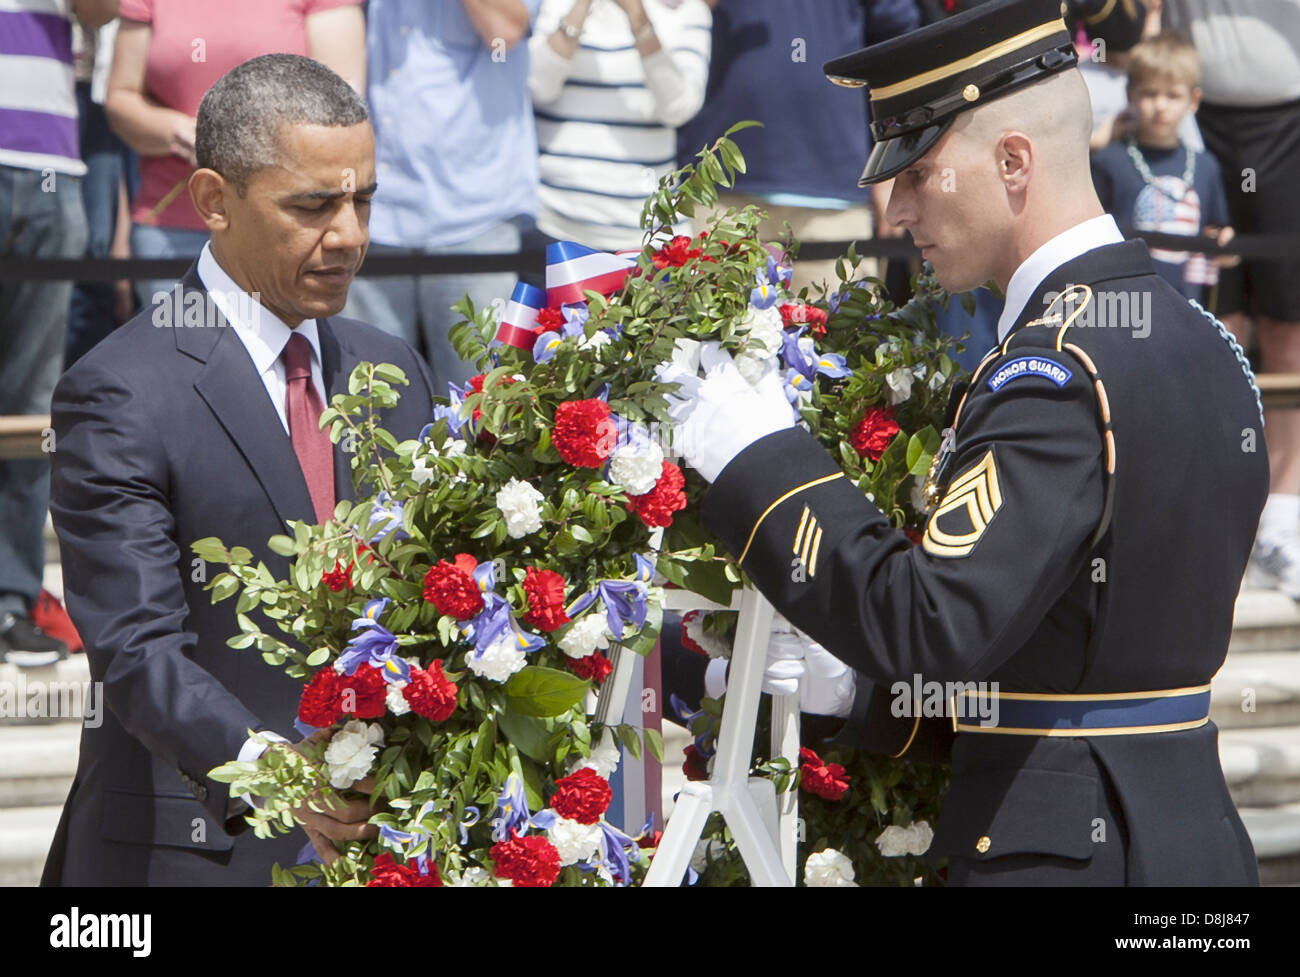 El presidente estadounidense, Barack Obama, coloca una ofrenda floral en la Tumba del Soldado Desconocido en honor del Día de los Veteranos en el Cementerio Nacional de Arlington El 27 de mayo de 2013 en Arlington, Virginia. Foto de stock